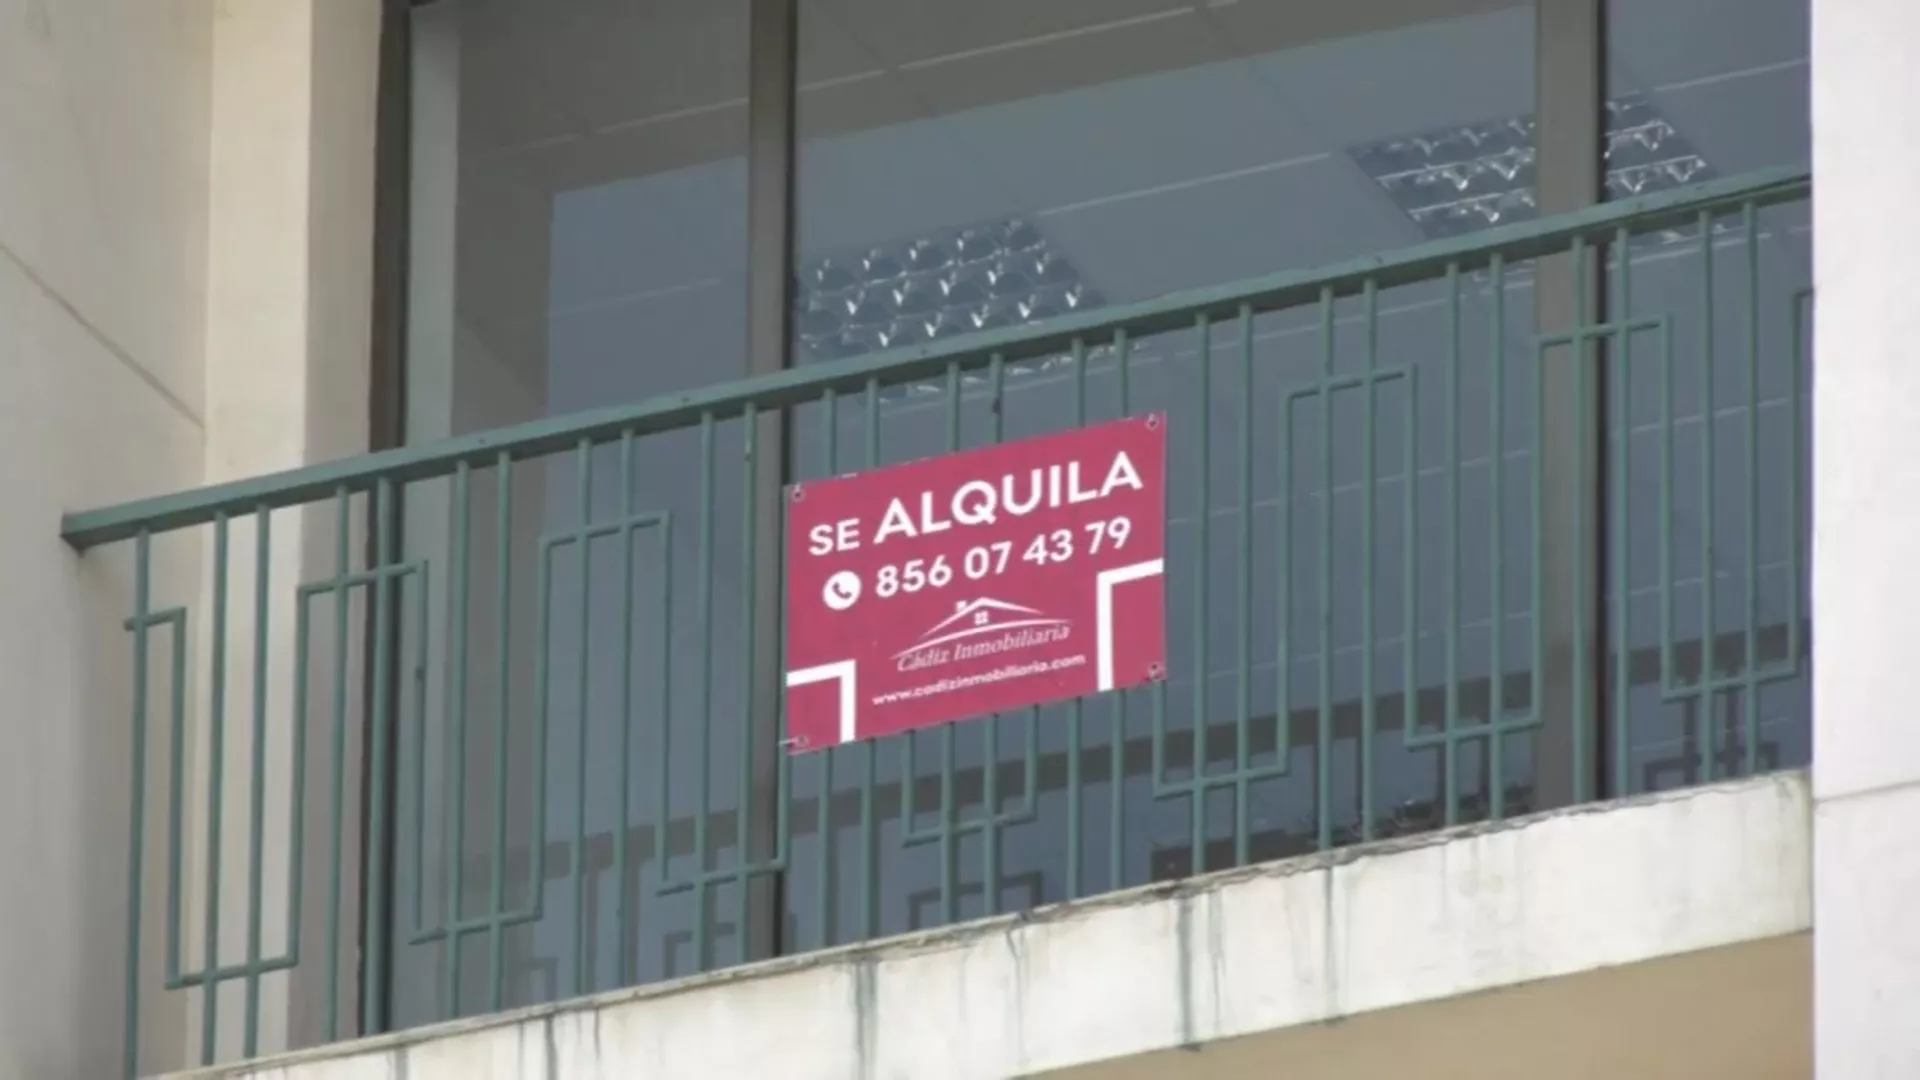 El precio de alquiler sigue siendo de los más elevados en la provincia de Cádiz